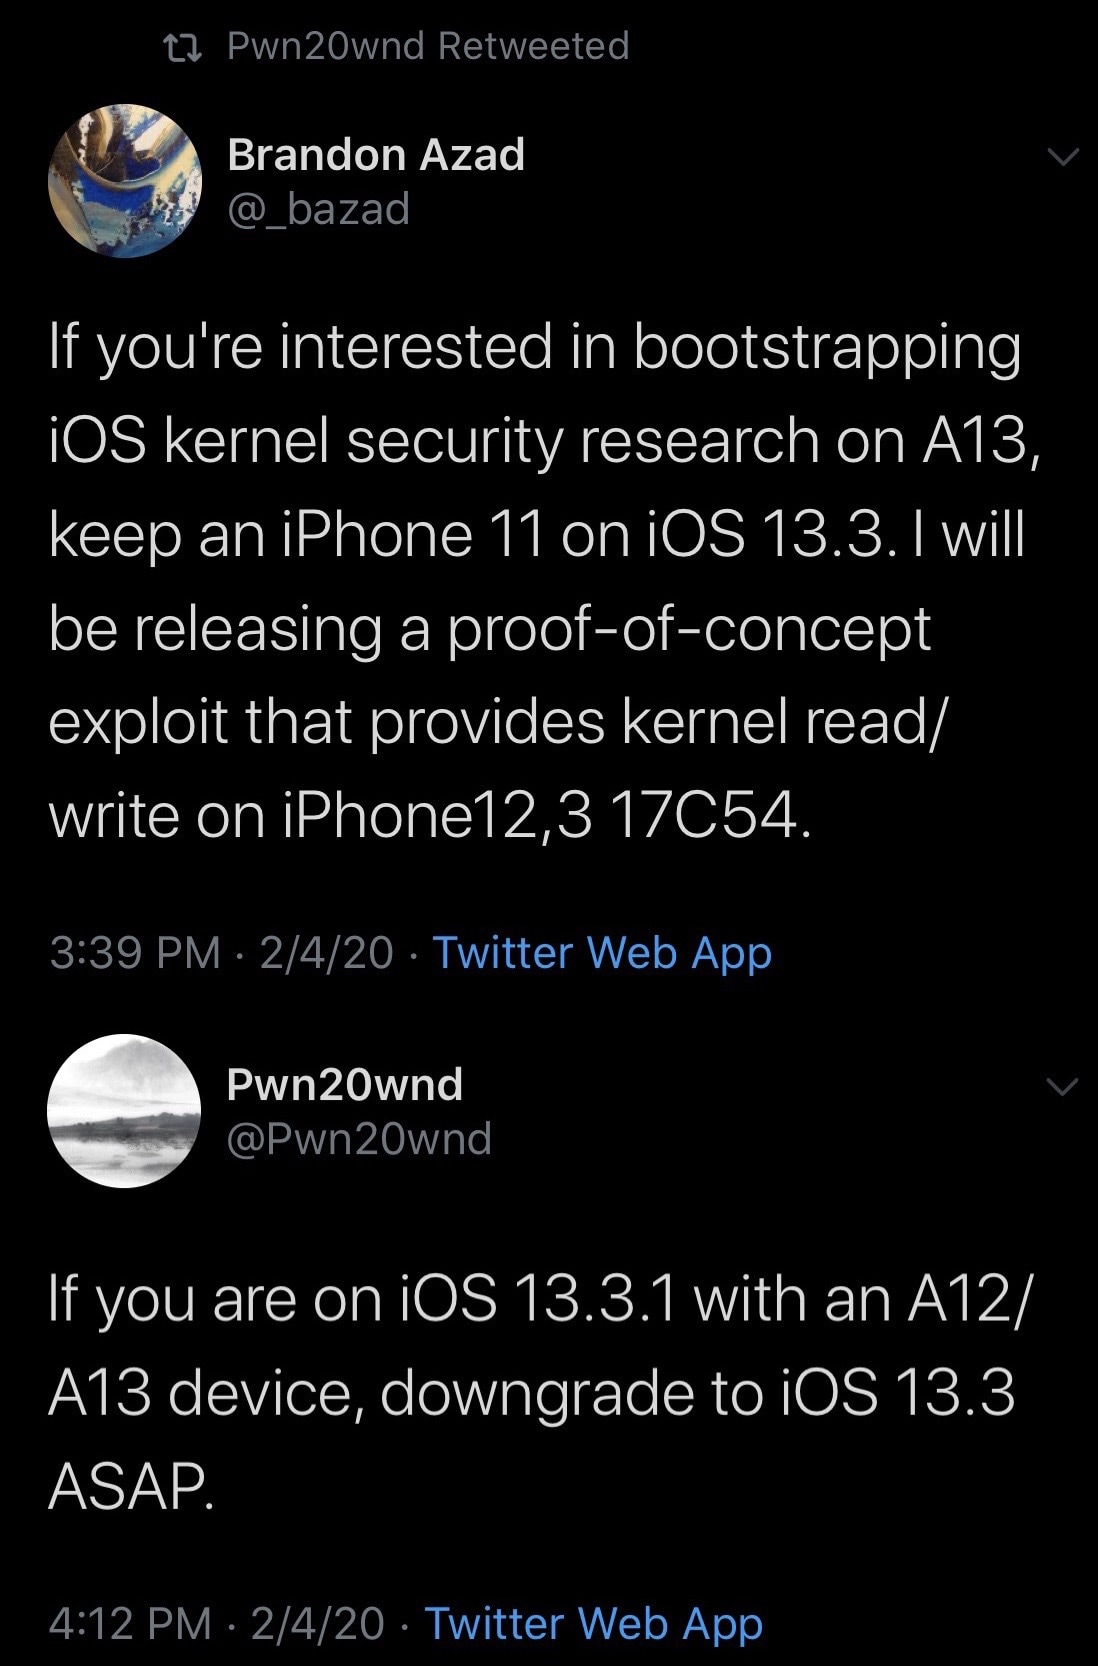 Brandon Azad planerar att släppa en ny exploit för iPhone 11 på iOS 13.3 3